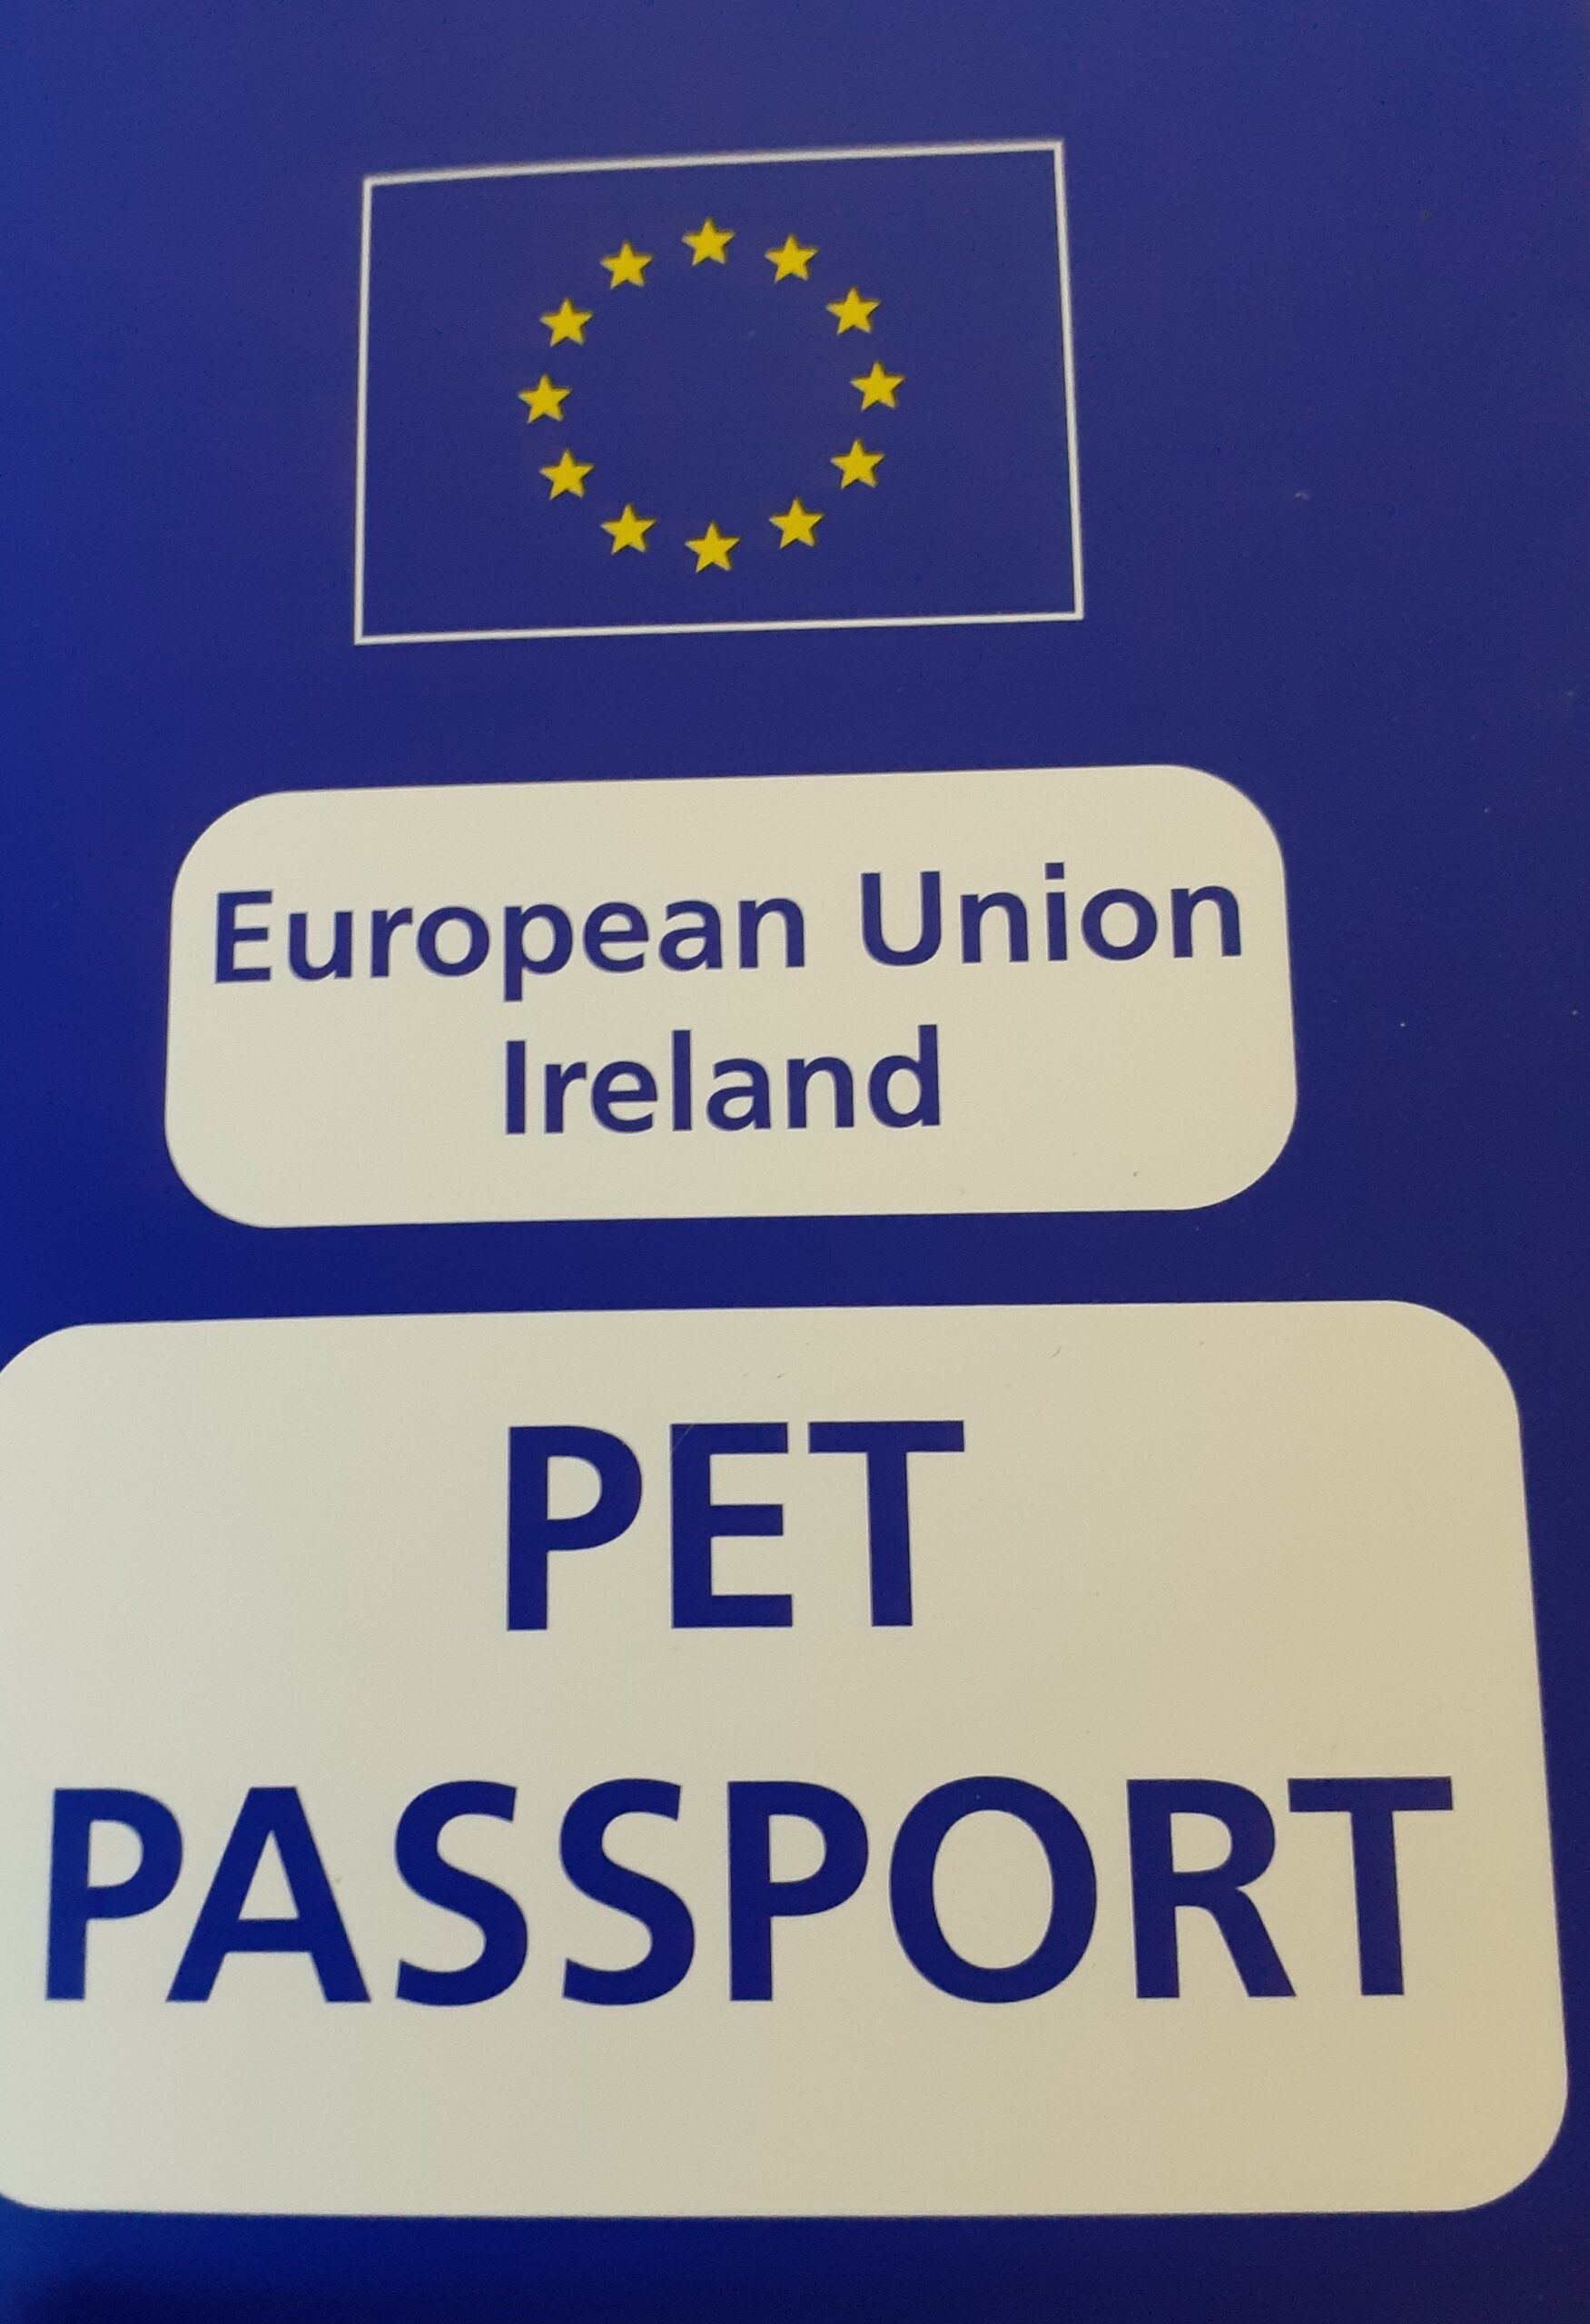 How to Get a Pet Passport - Carn Vet Clinic